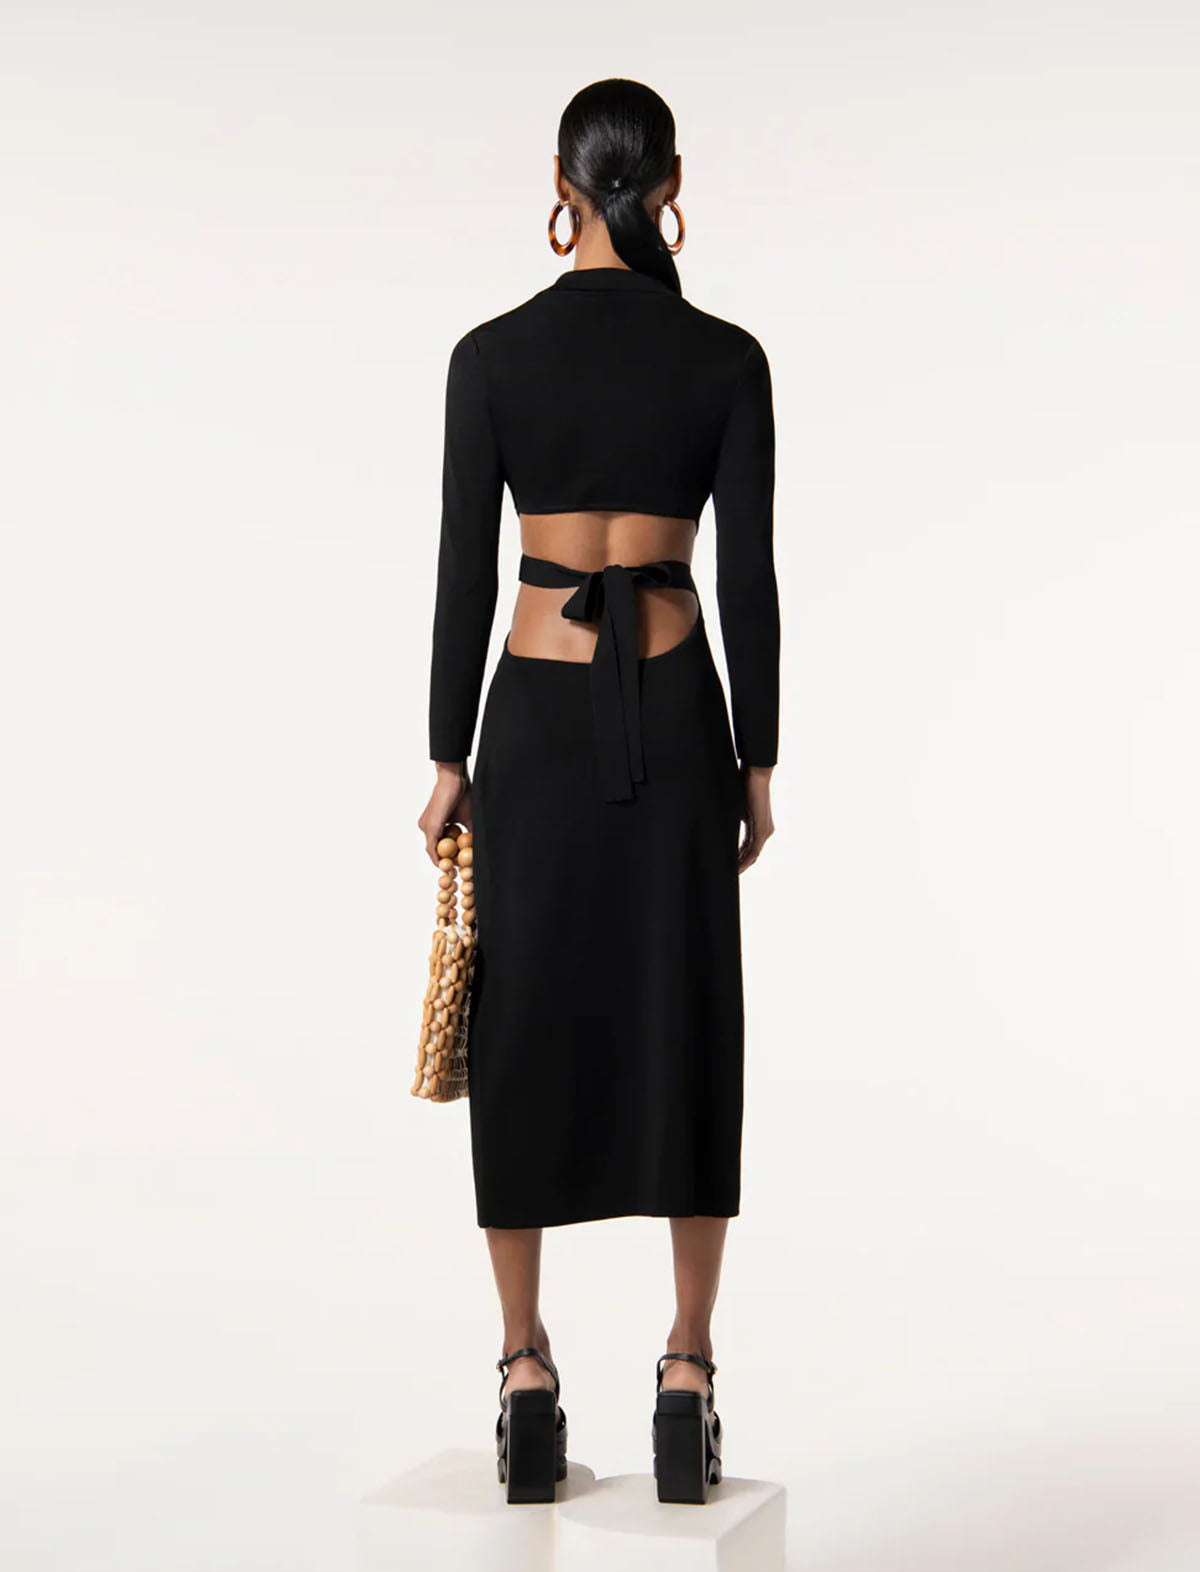 CULT GAIA Cristina Knit Dress in Black